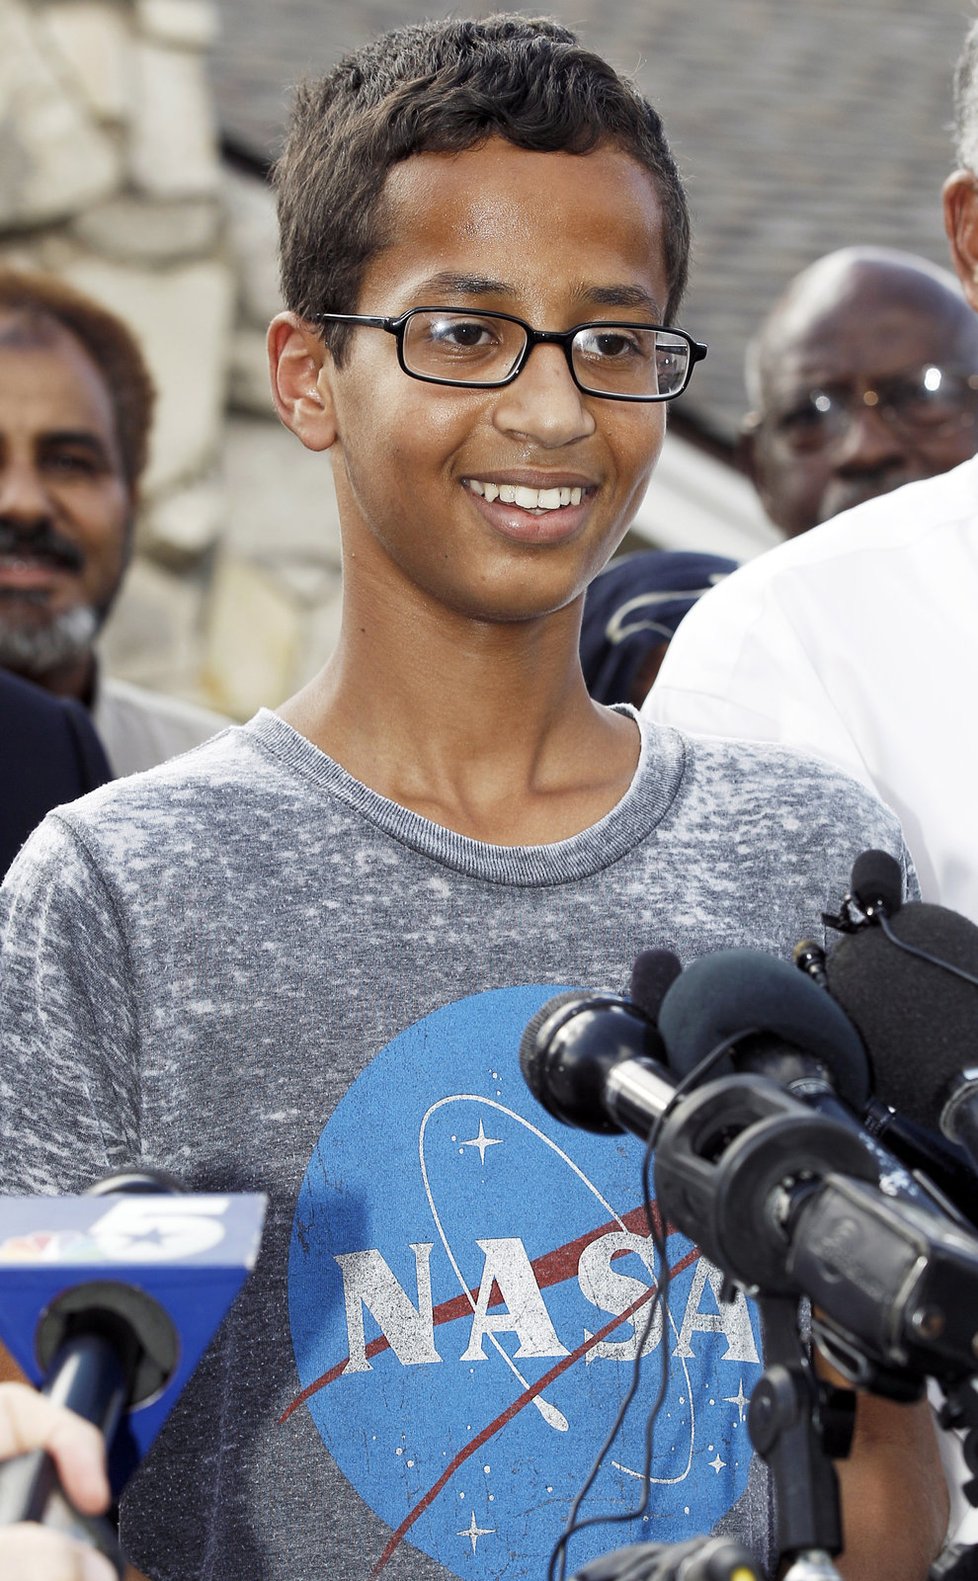 14letý Ahmed Mohamed byl zatčen poté, co do školy přinesl vlastnoručně vyrobené hodiny. Učitelé je považovali za bombu.